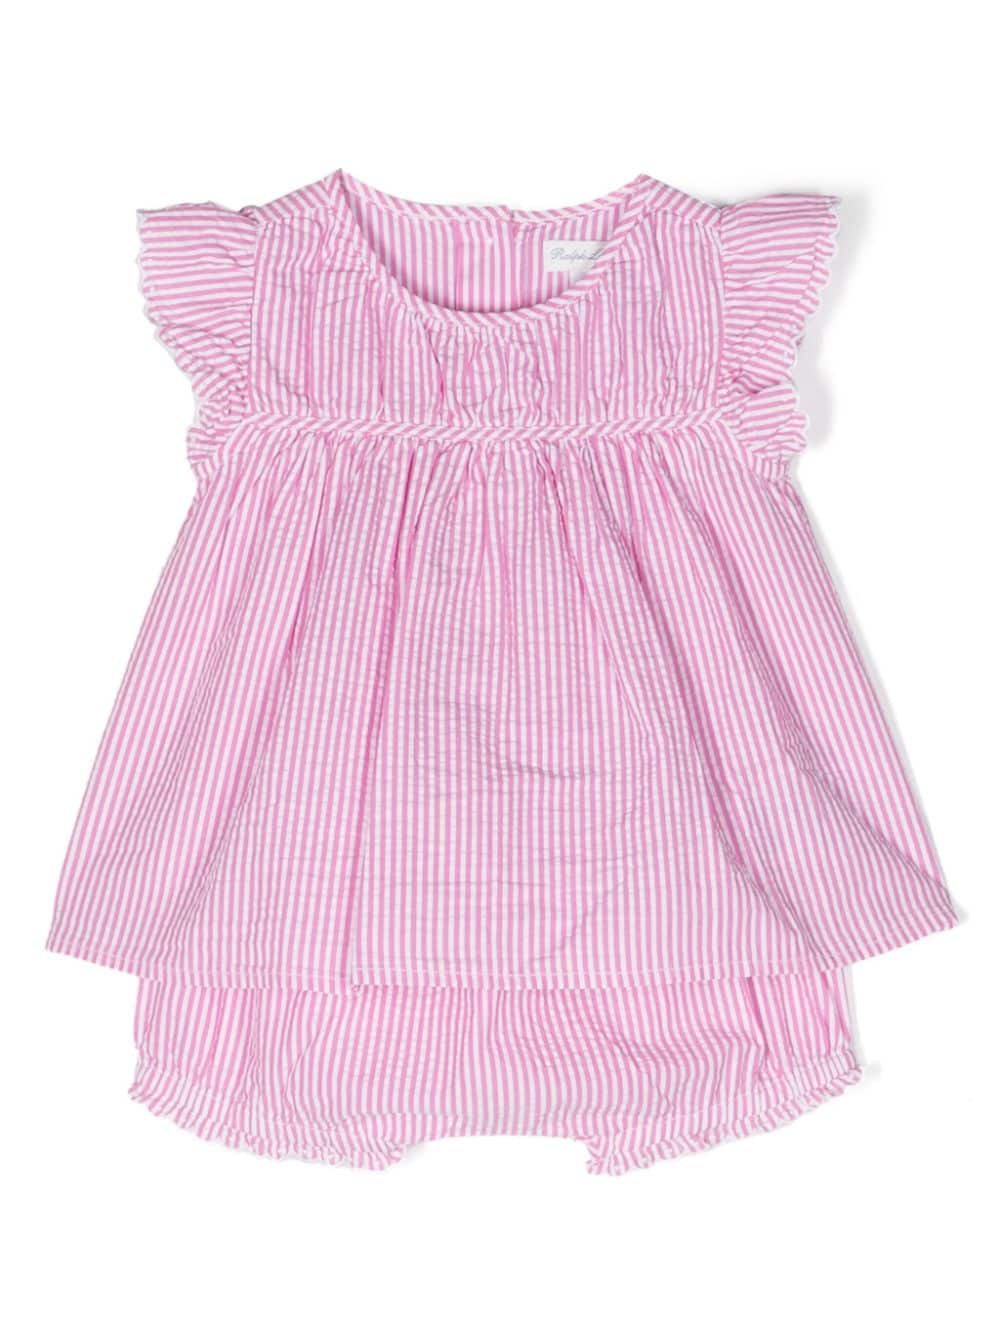 Ralph Lauren Kids striped blouse and shorts set - Pink von Ralph Lauren Kids